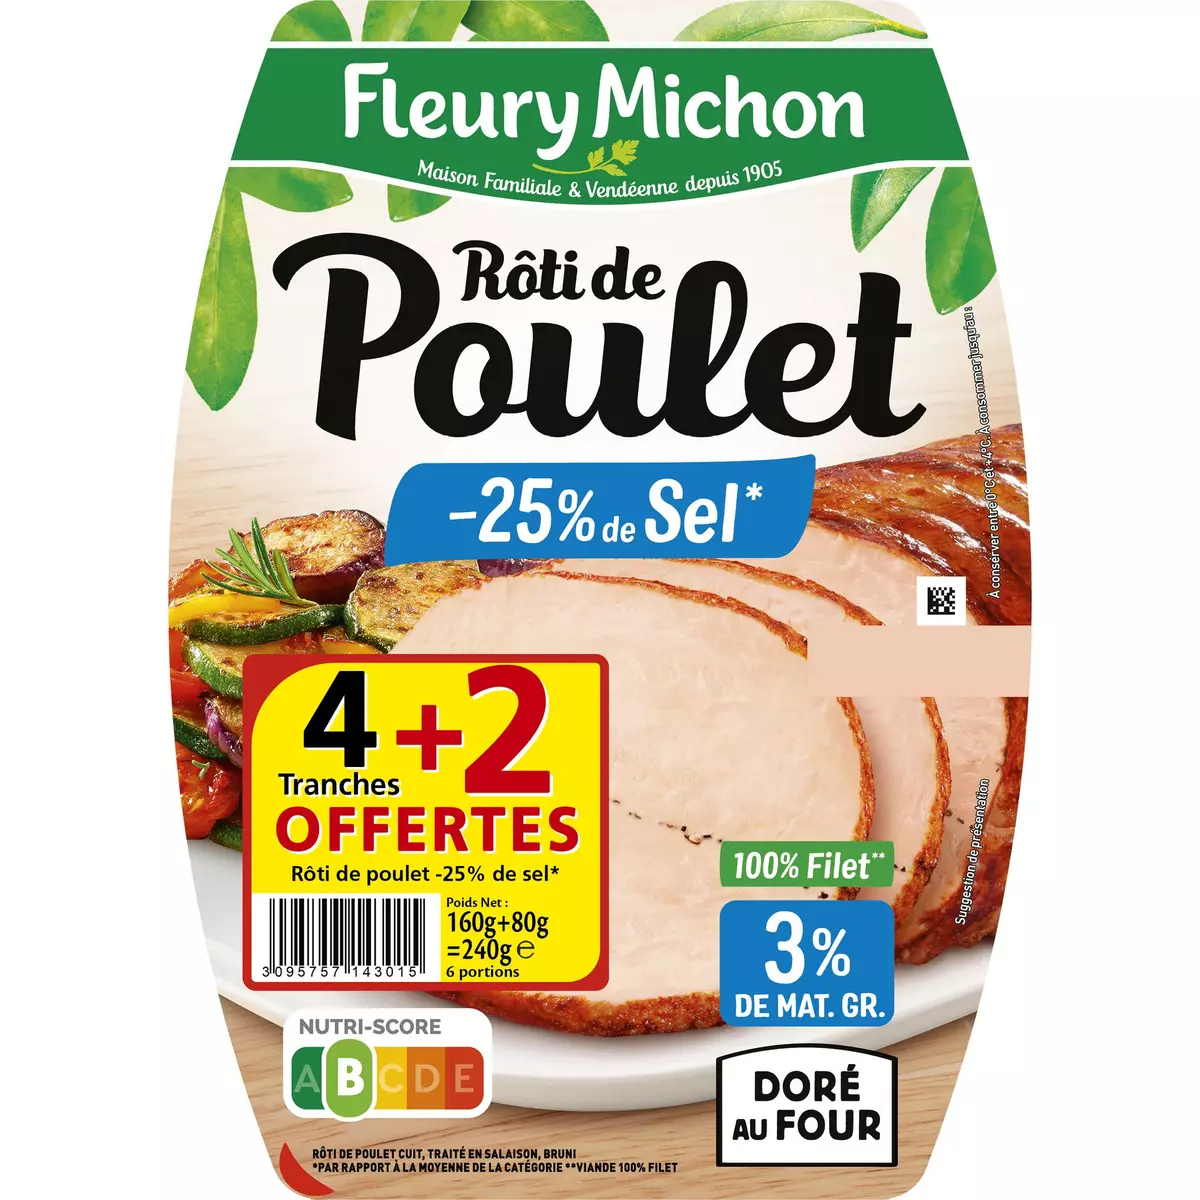 FLEURY MICHON Rôti de poulet cuit réduit en sel 4 tranches + 2 offertes 240g